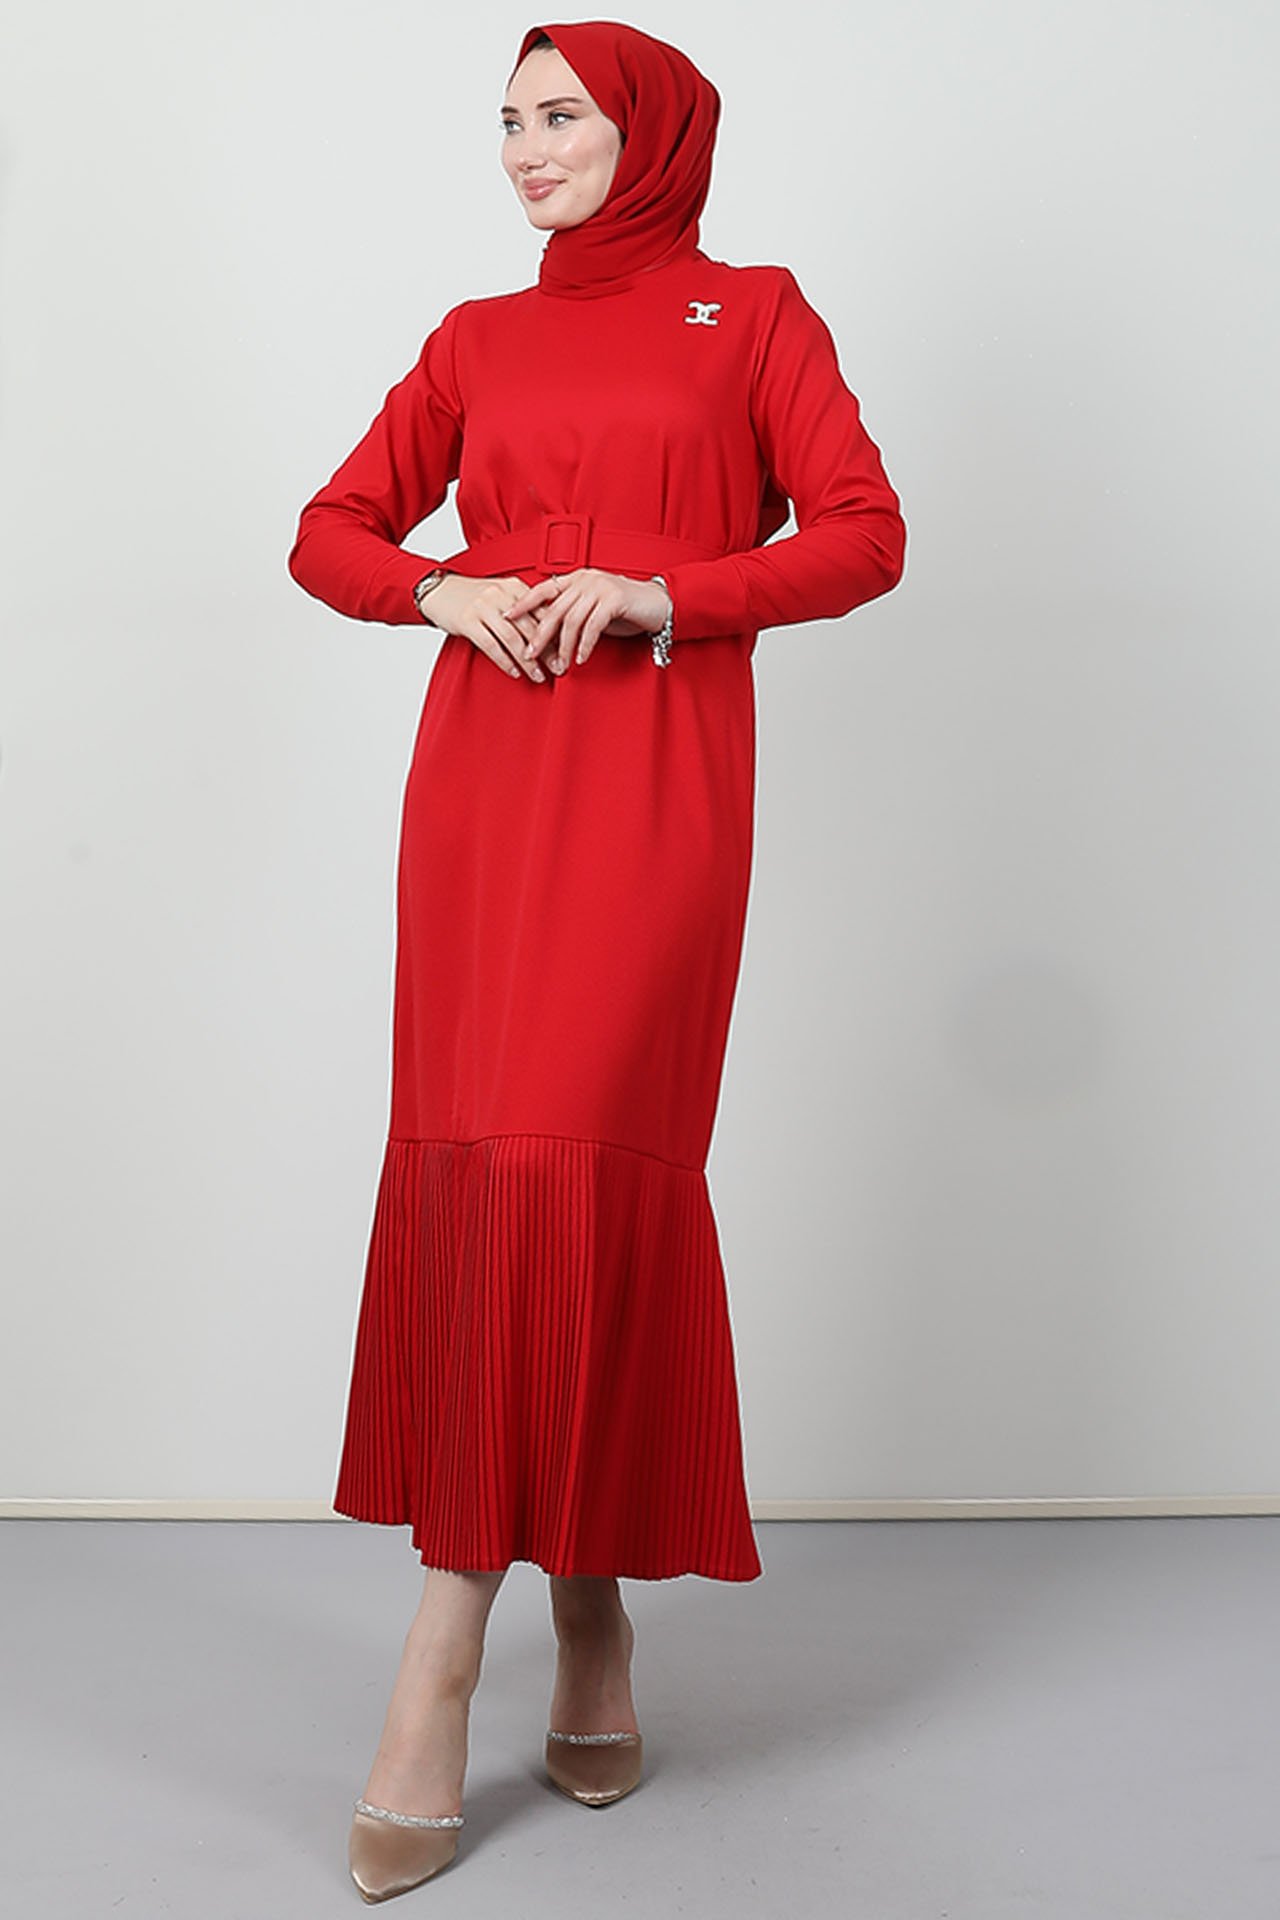 GİZAGİYİM - Kolu Fermuarlı Braşür Elbise Kırmızı